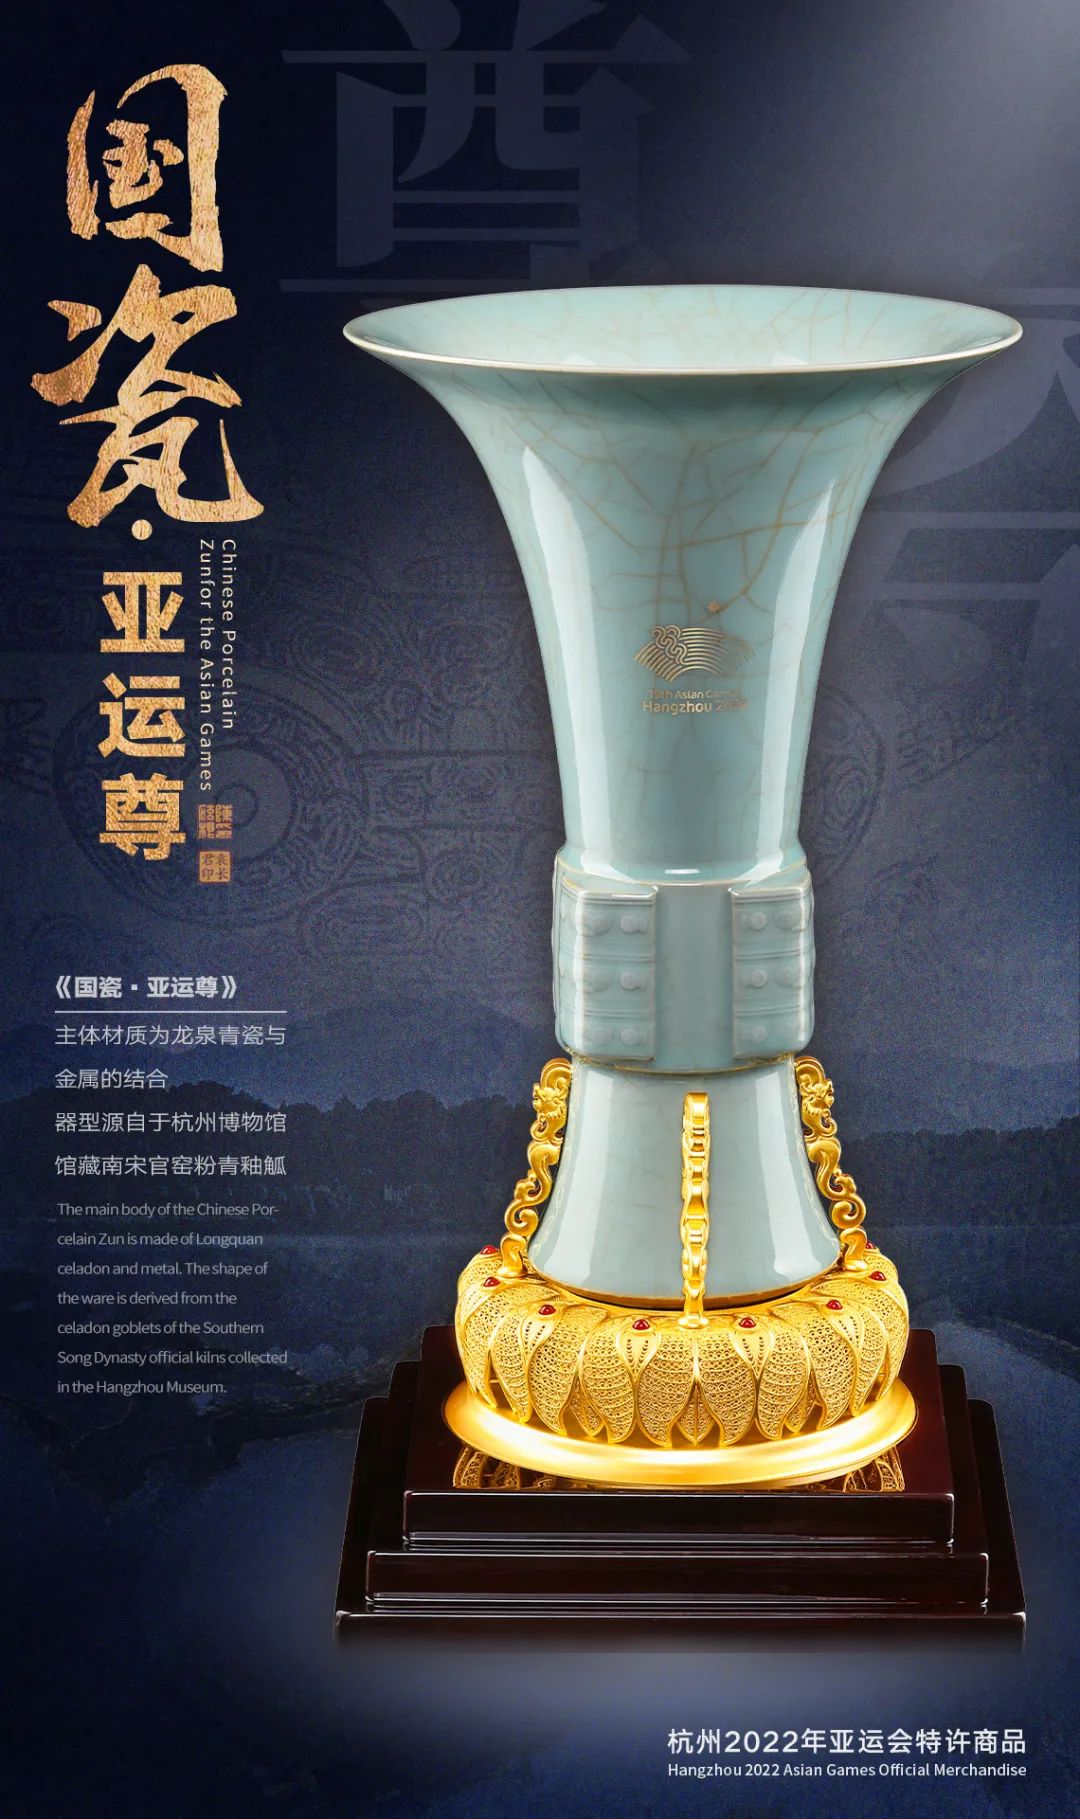 首批20国杭州亚运参赛国驻华使馆永久珍藏《国瓷·亚运尊》